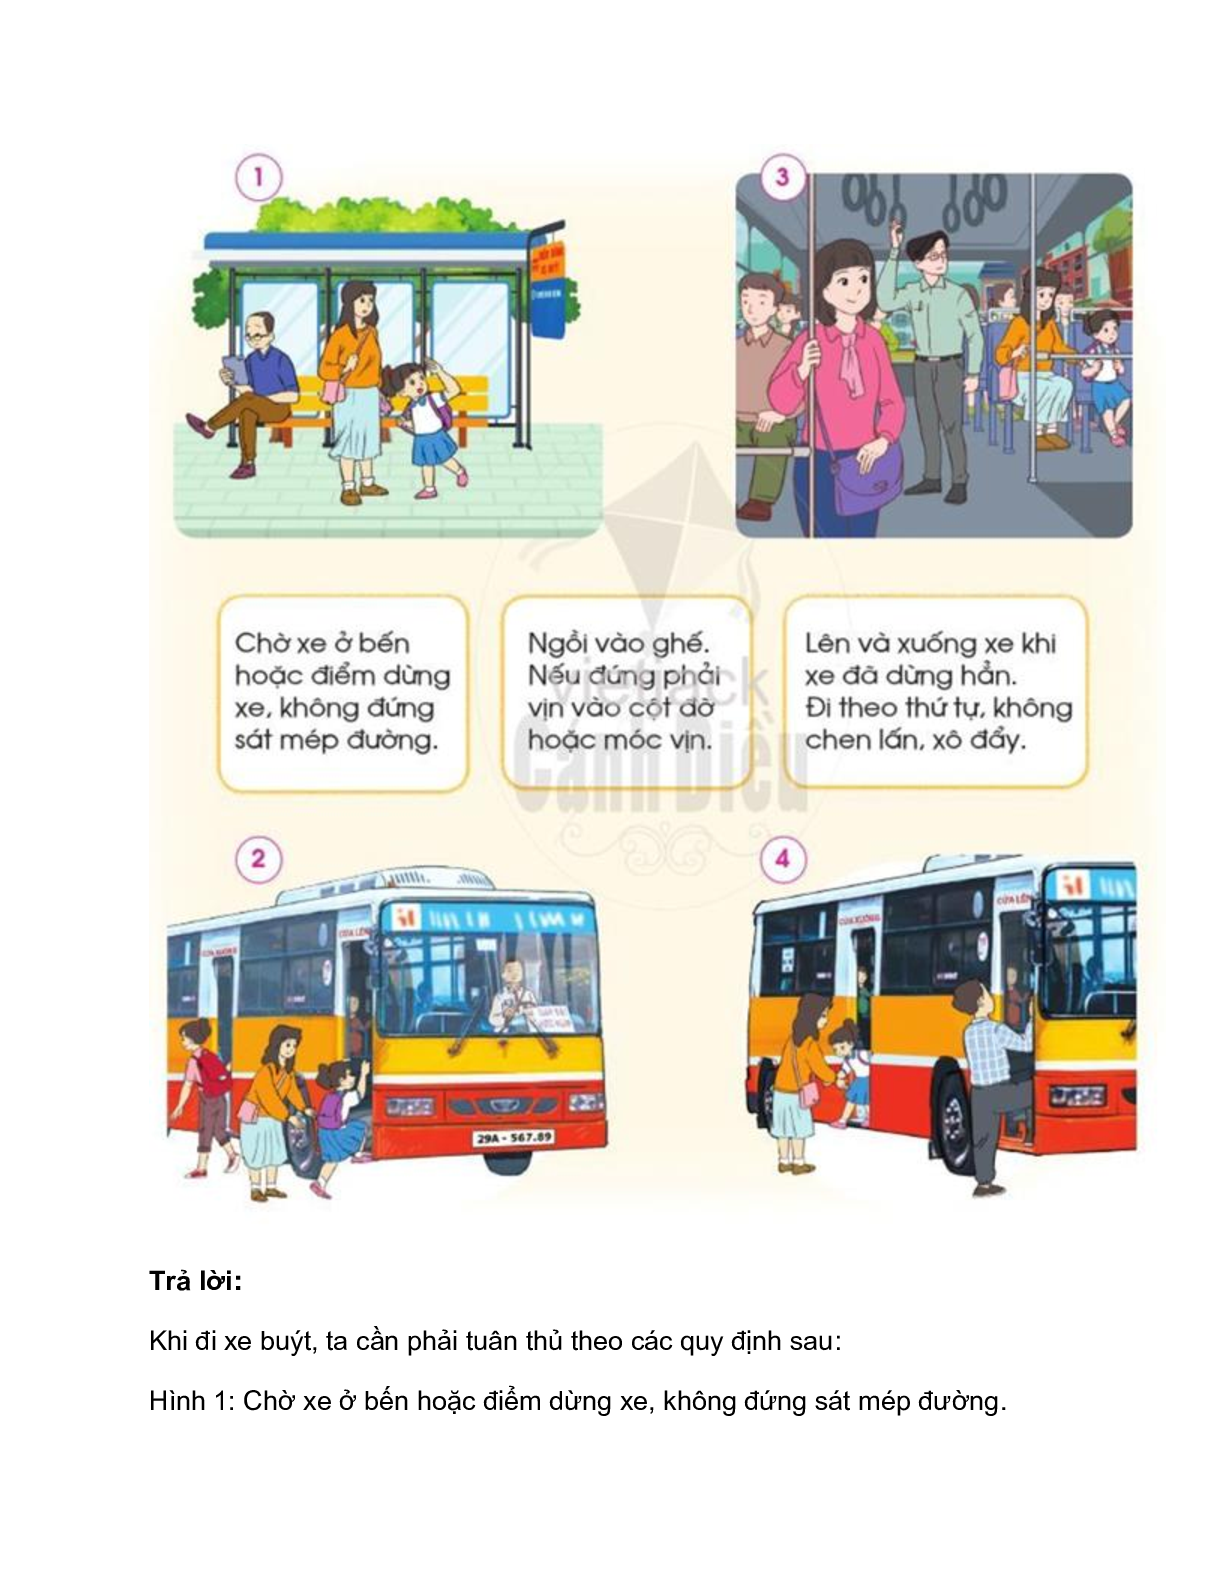 Giải SGK Tự nhiên và Xã hội lớp 2 trang 47, 48, 49, 50, 51 Bài 9: An toàn khi đi trên phương tiện giao thông – Cánh diều (trang 5)